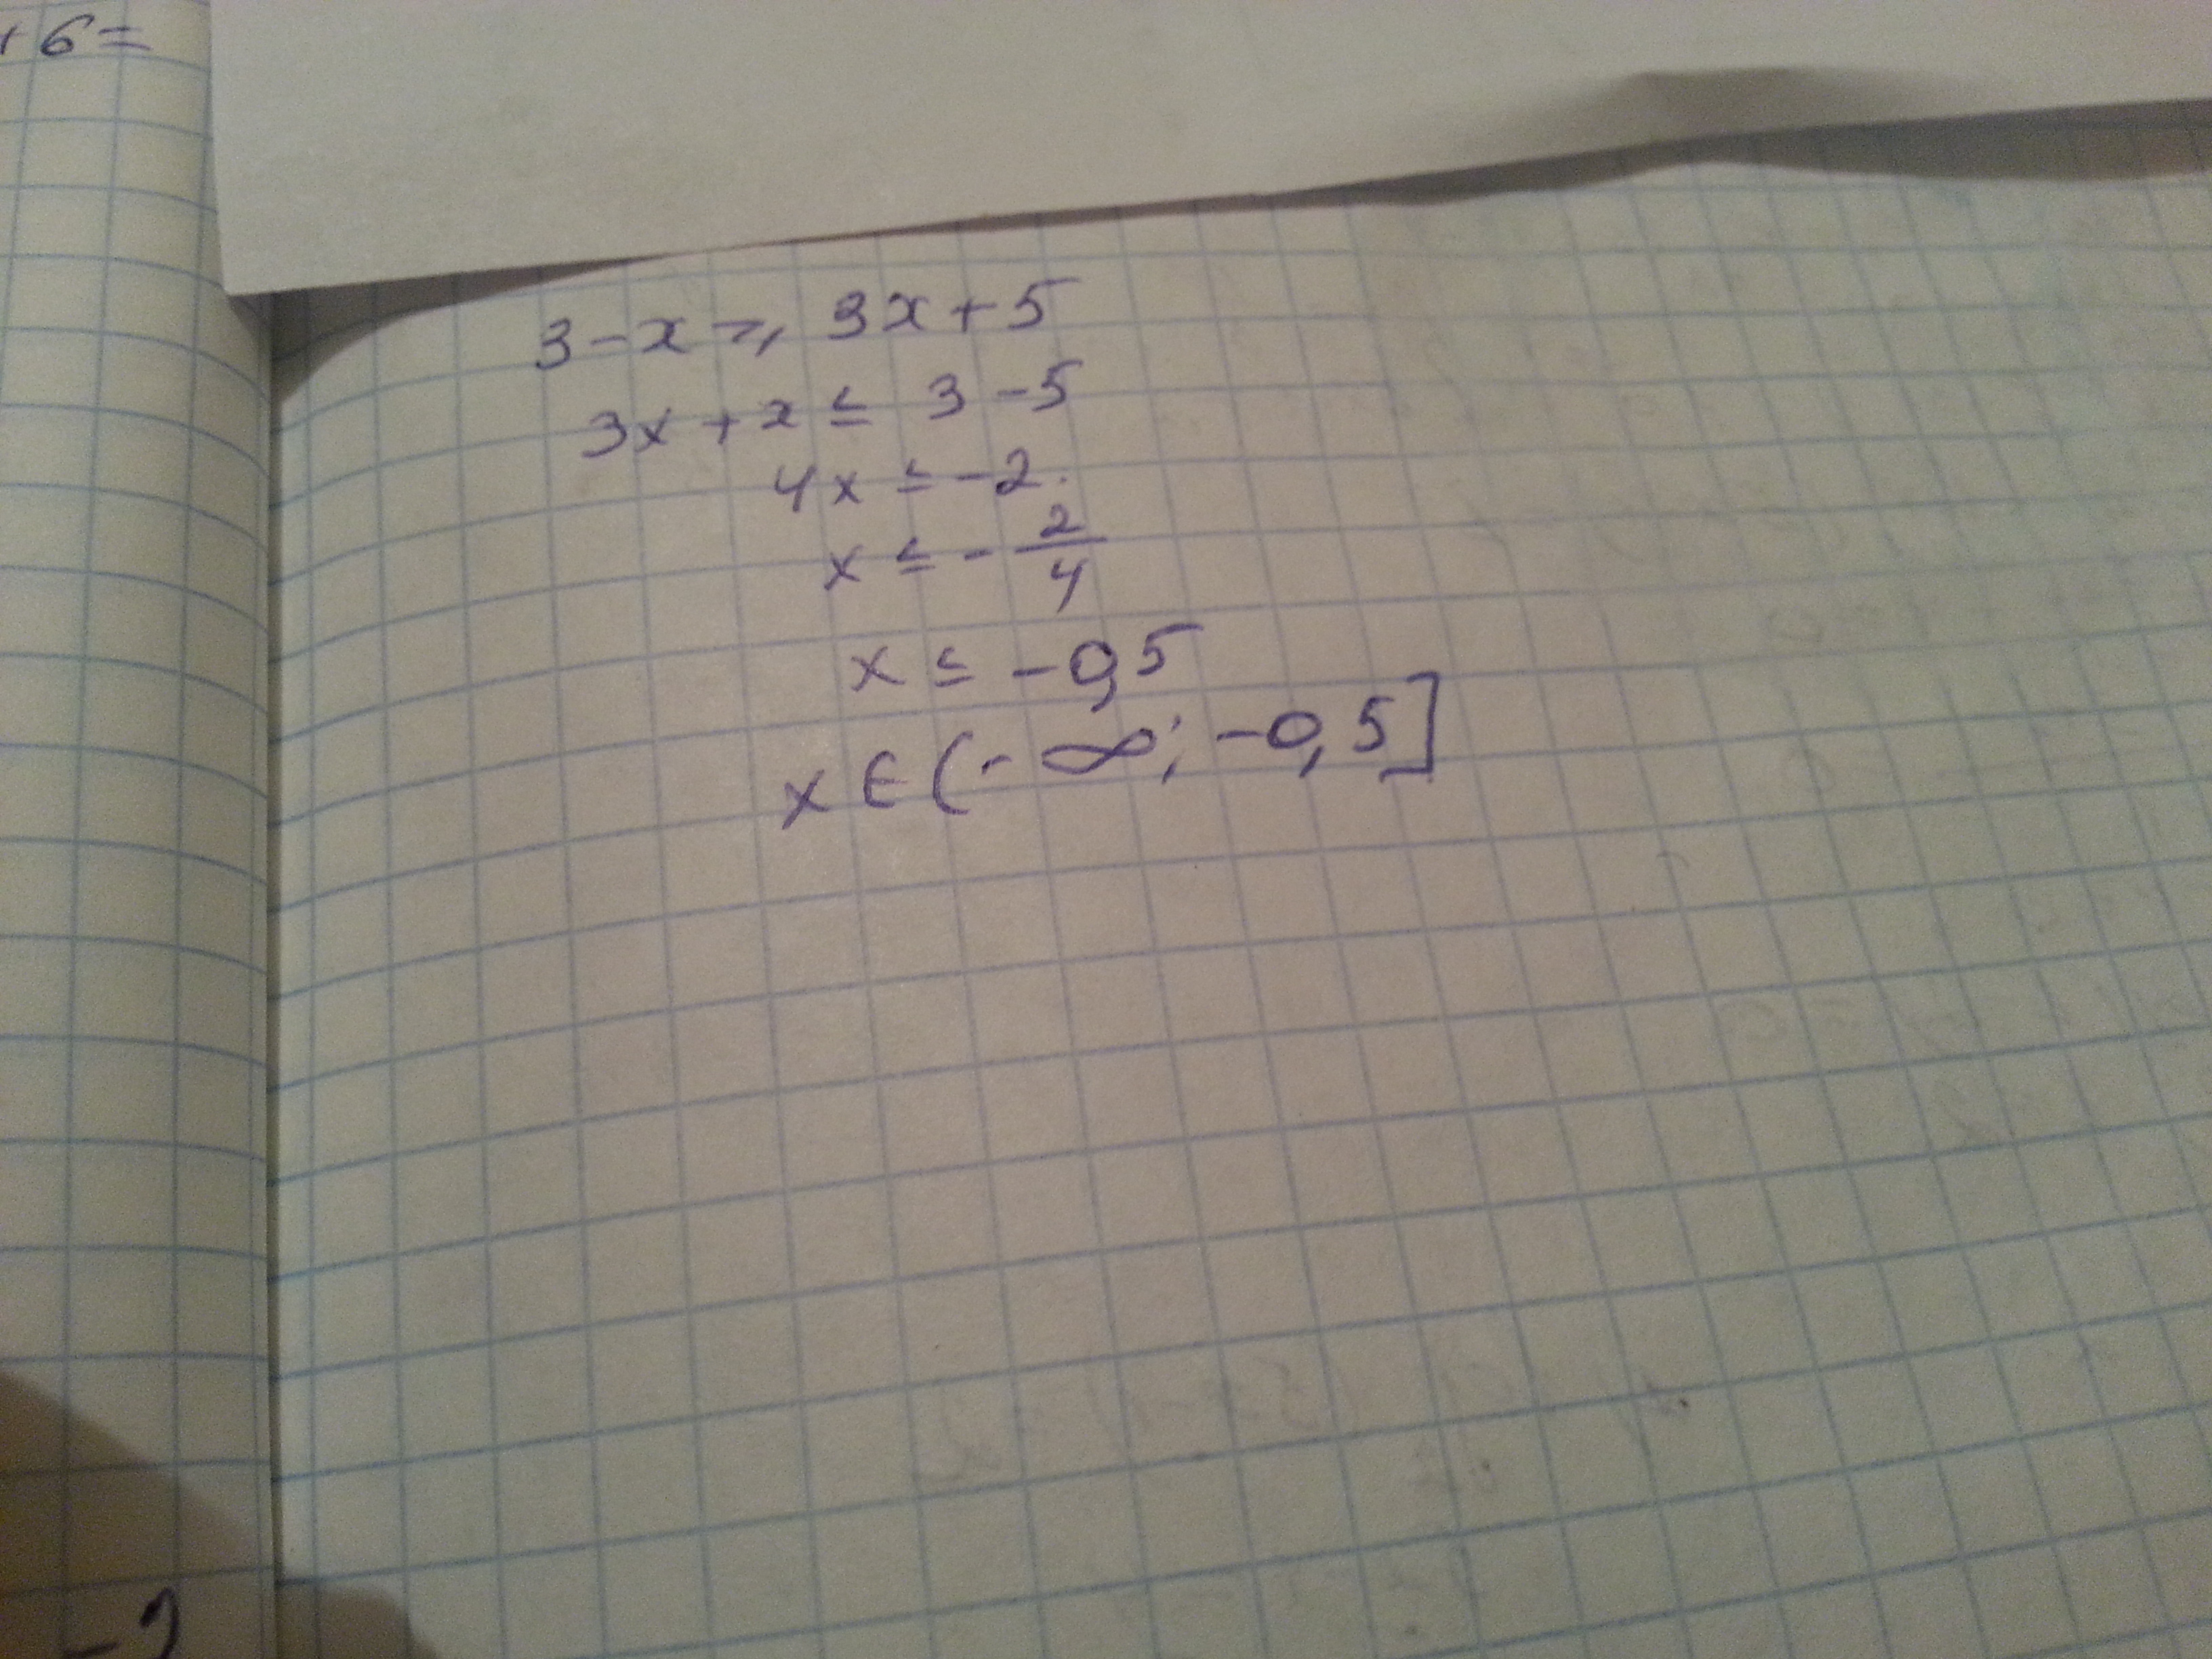 X x3 3 x5 5. 3x-(x-3)<=5x. Укажите решение неравенства -3-5x< x+3. 3-X 3x+5 решение неравенства. 3-X>3x+5 укажите решение.